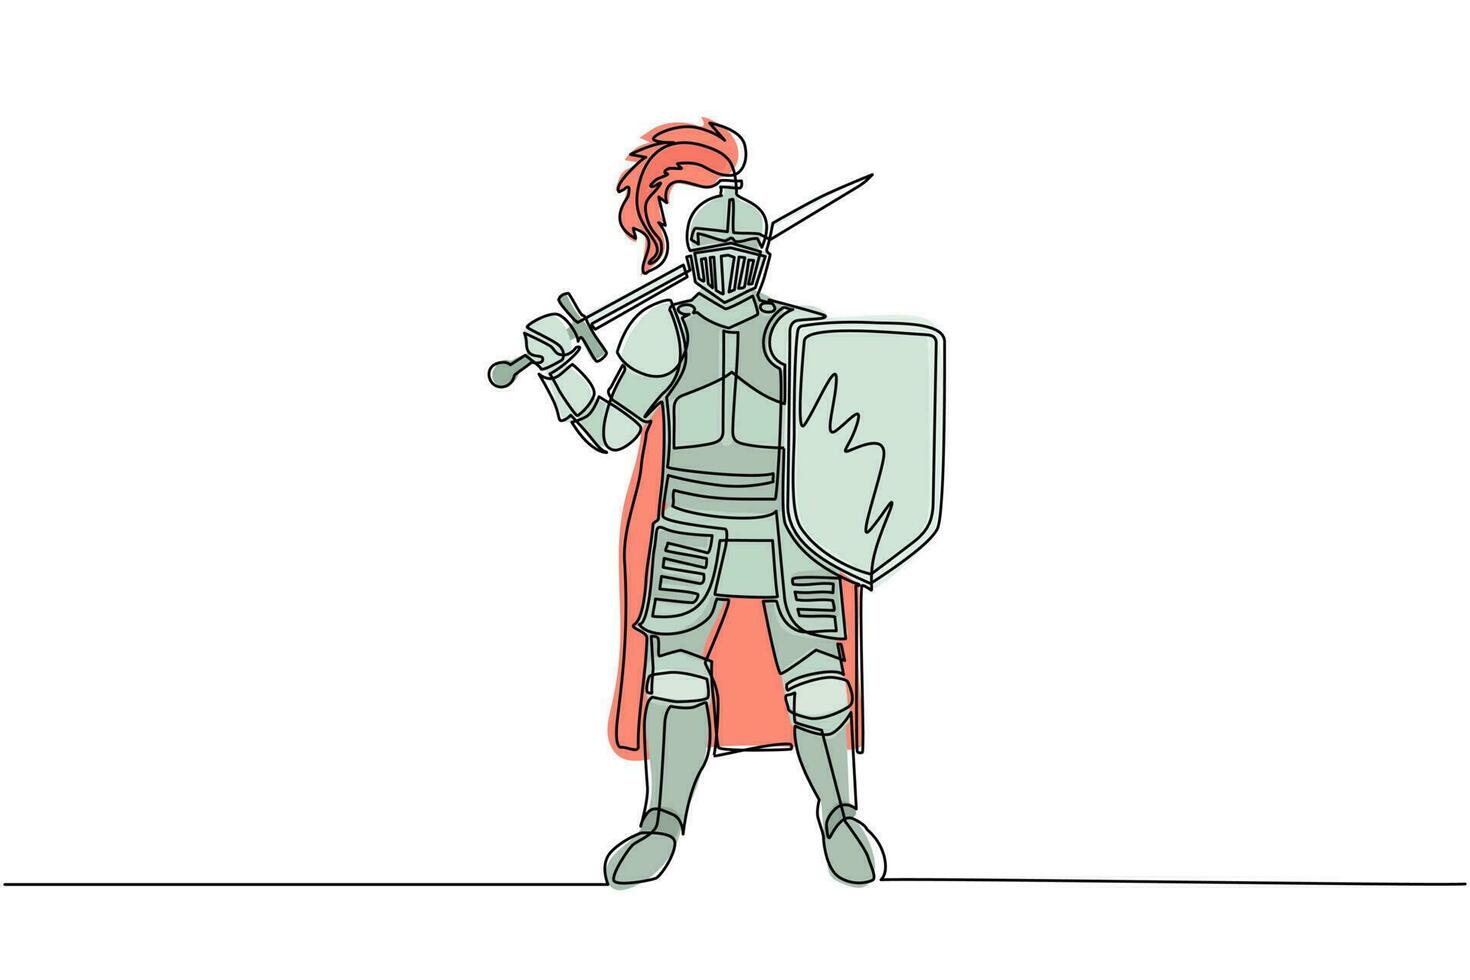 enkele een lijntekening middeleeuwse ridder staande in harnas en helm met schild en zwaard. historisch oud militair karakter. prins oude vechter. ononderbroken lijntekening ontwerp grafische vector